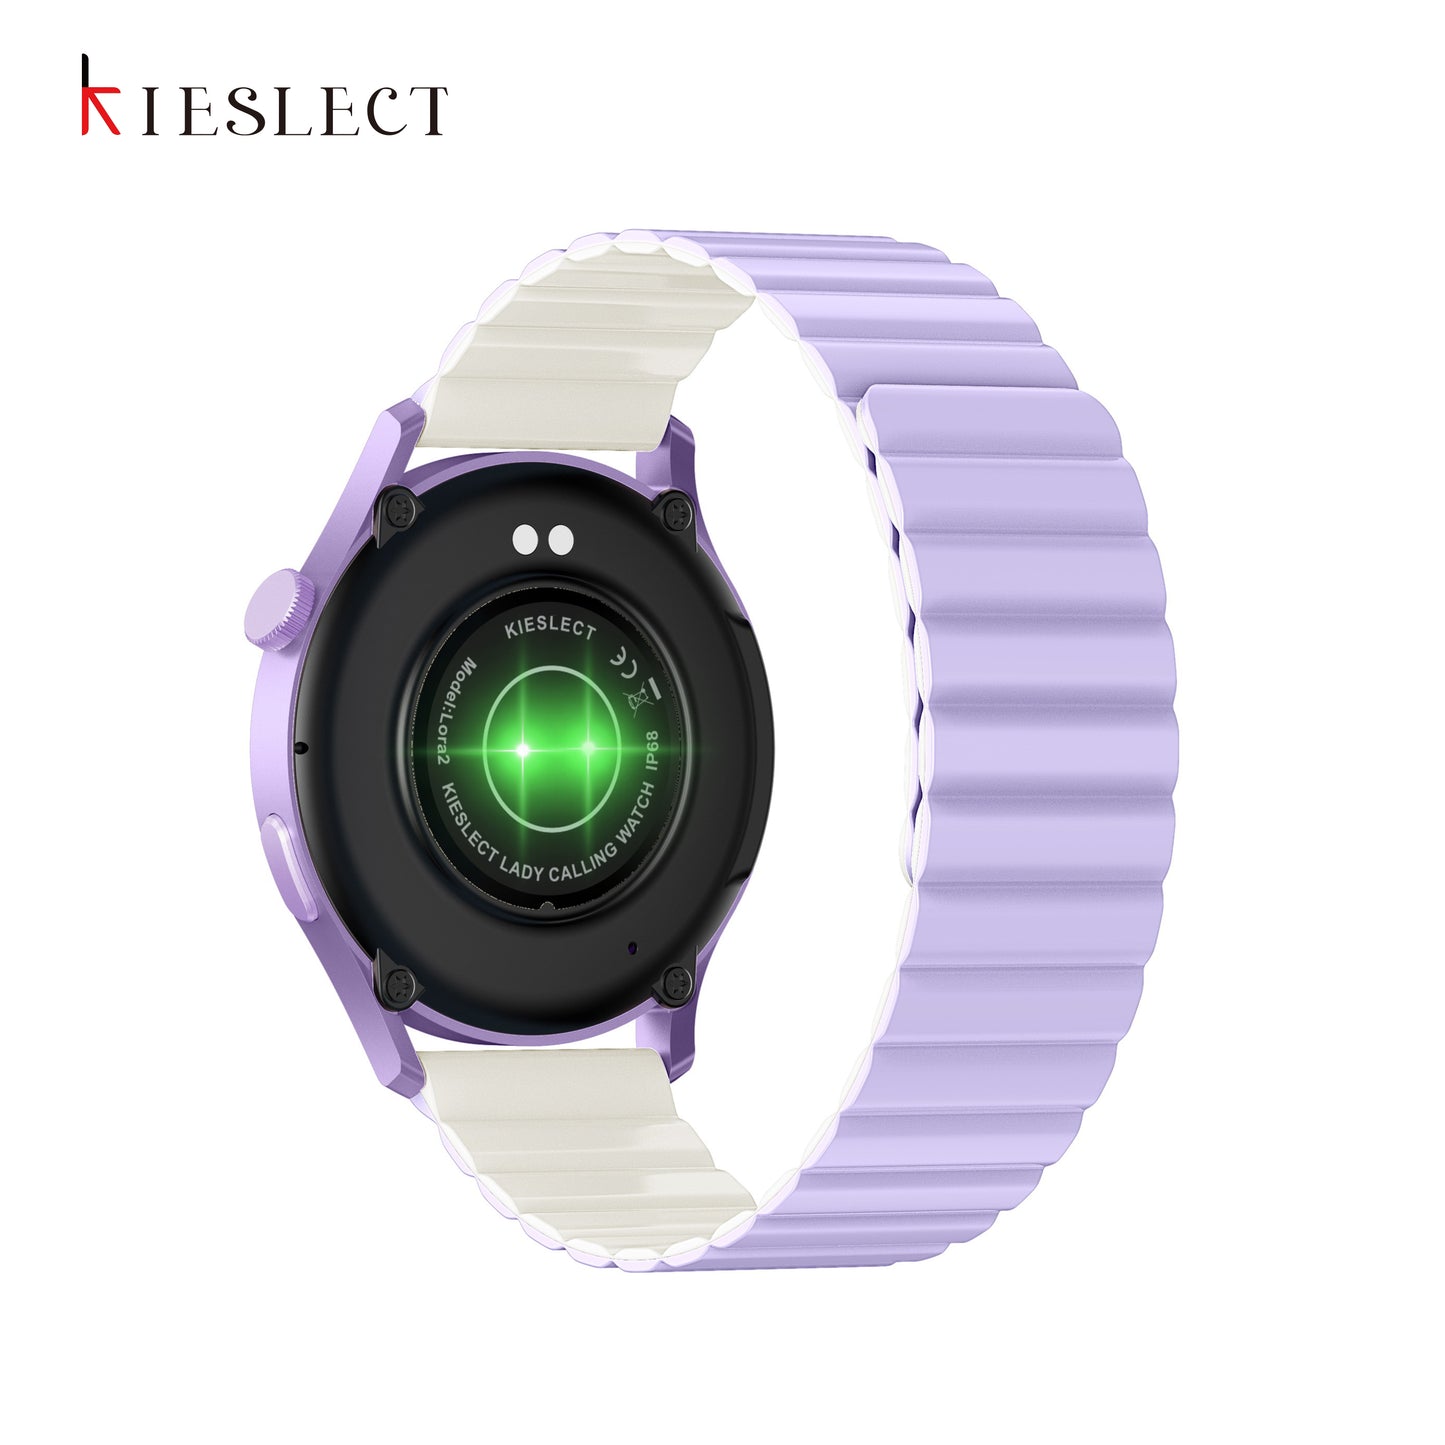 Kieslect Lora 2 Smartwatch 1.3'' AMOLED  (Purple, Pink, Gold)